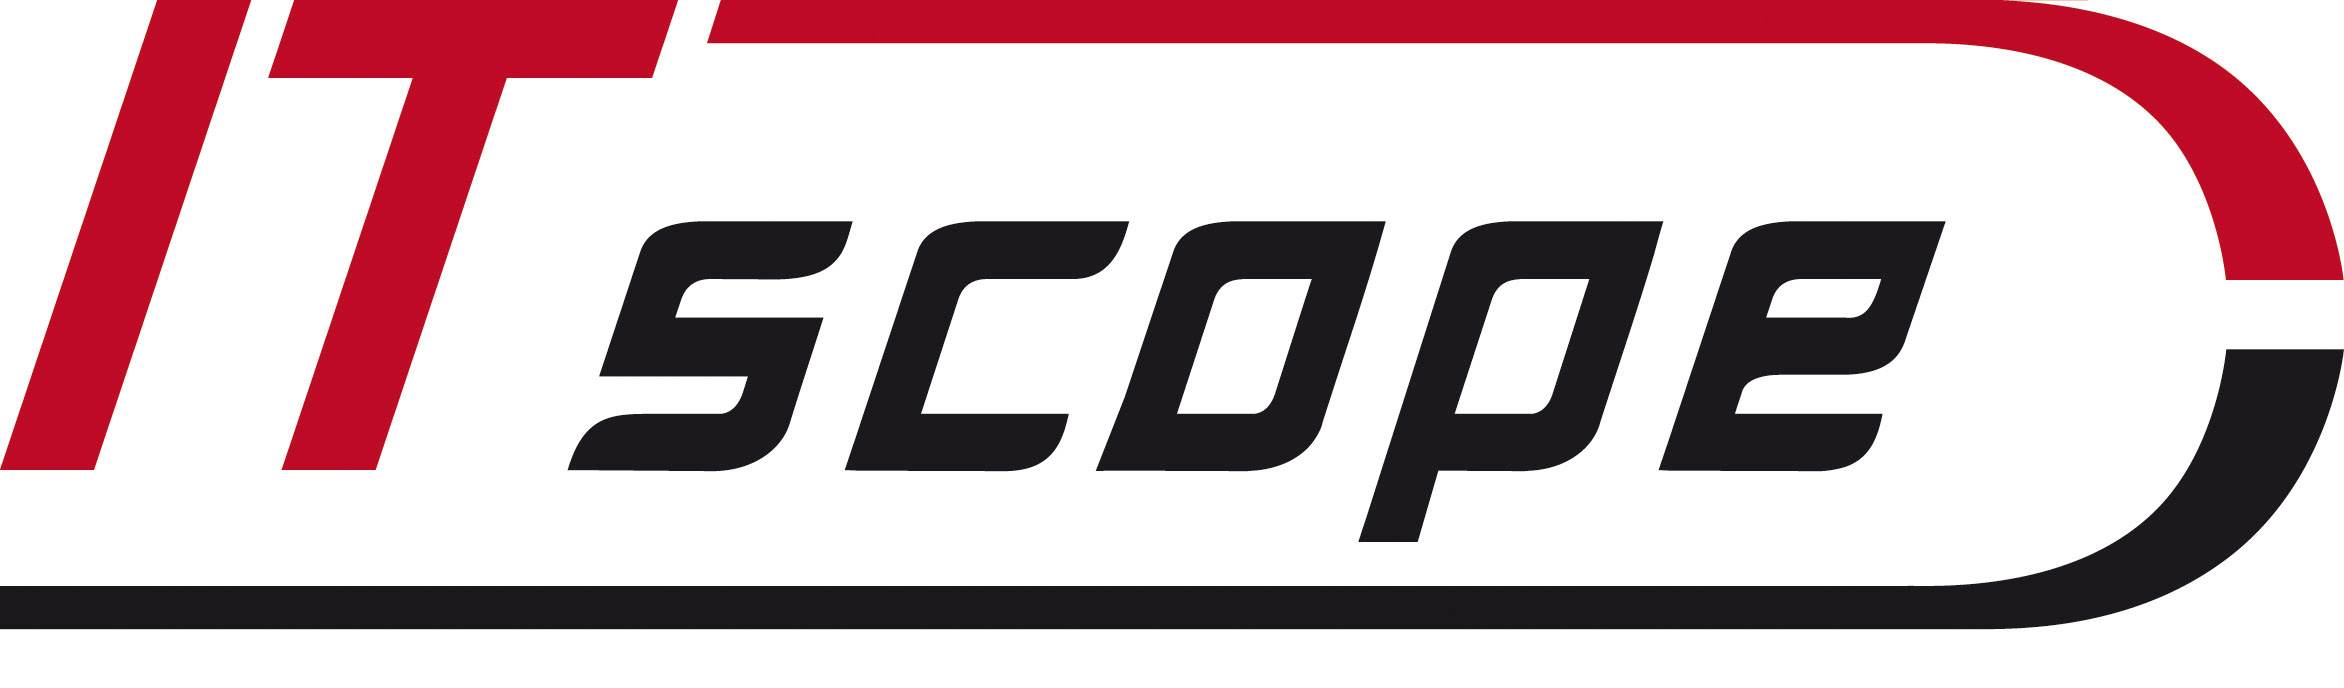 evernine-itscope-logo